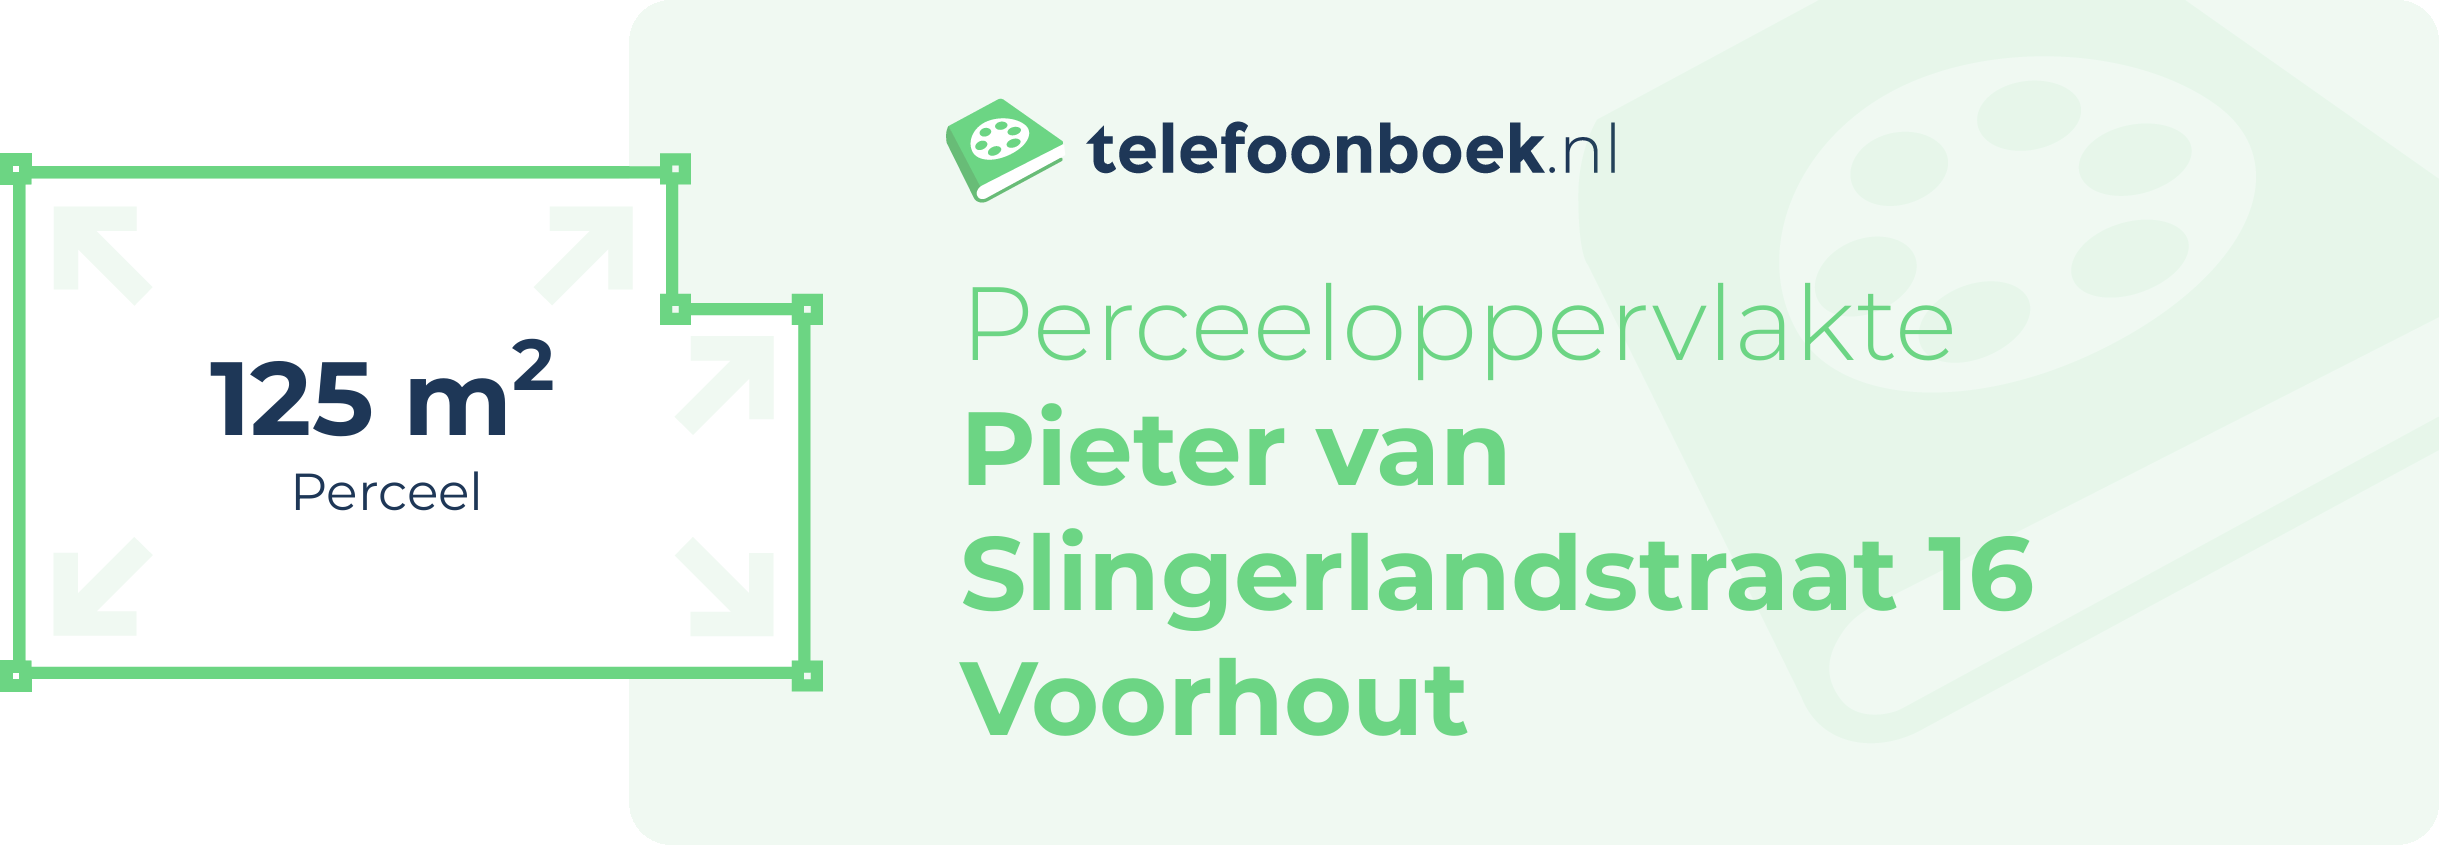 Perceeloppervlakte Pieter Van Slingerlandstraat 16 Voorhout